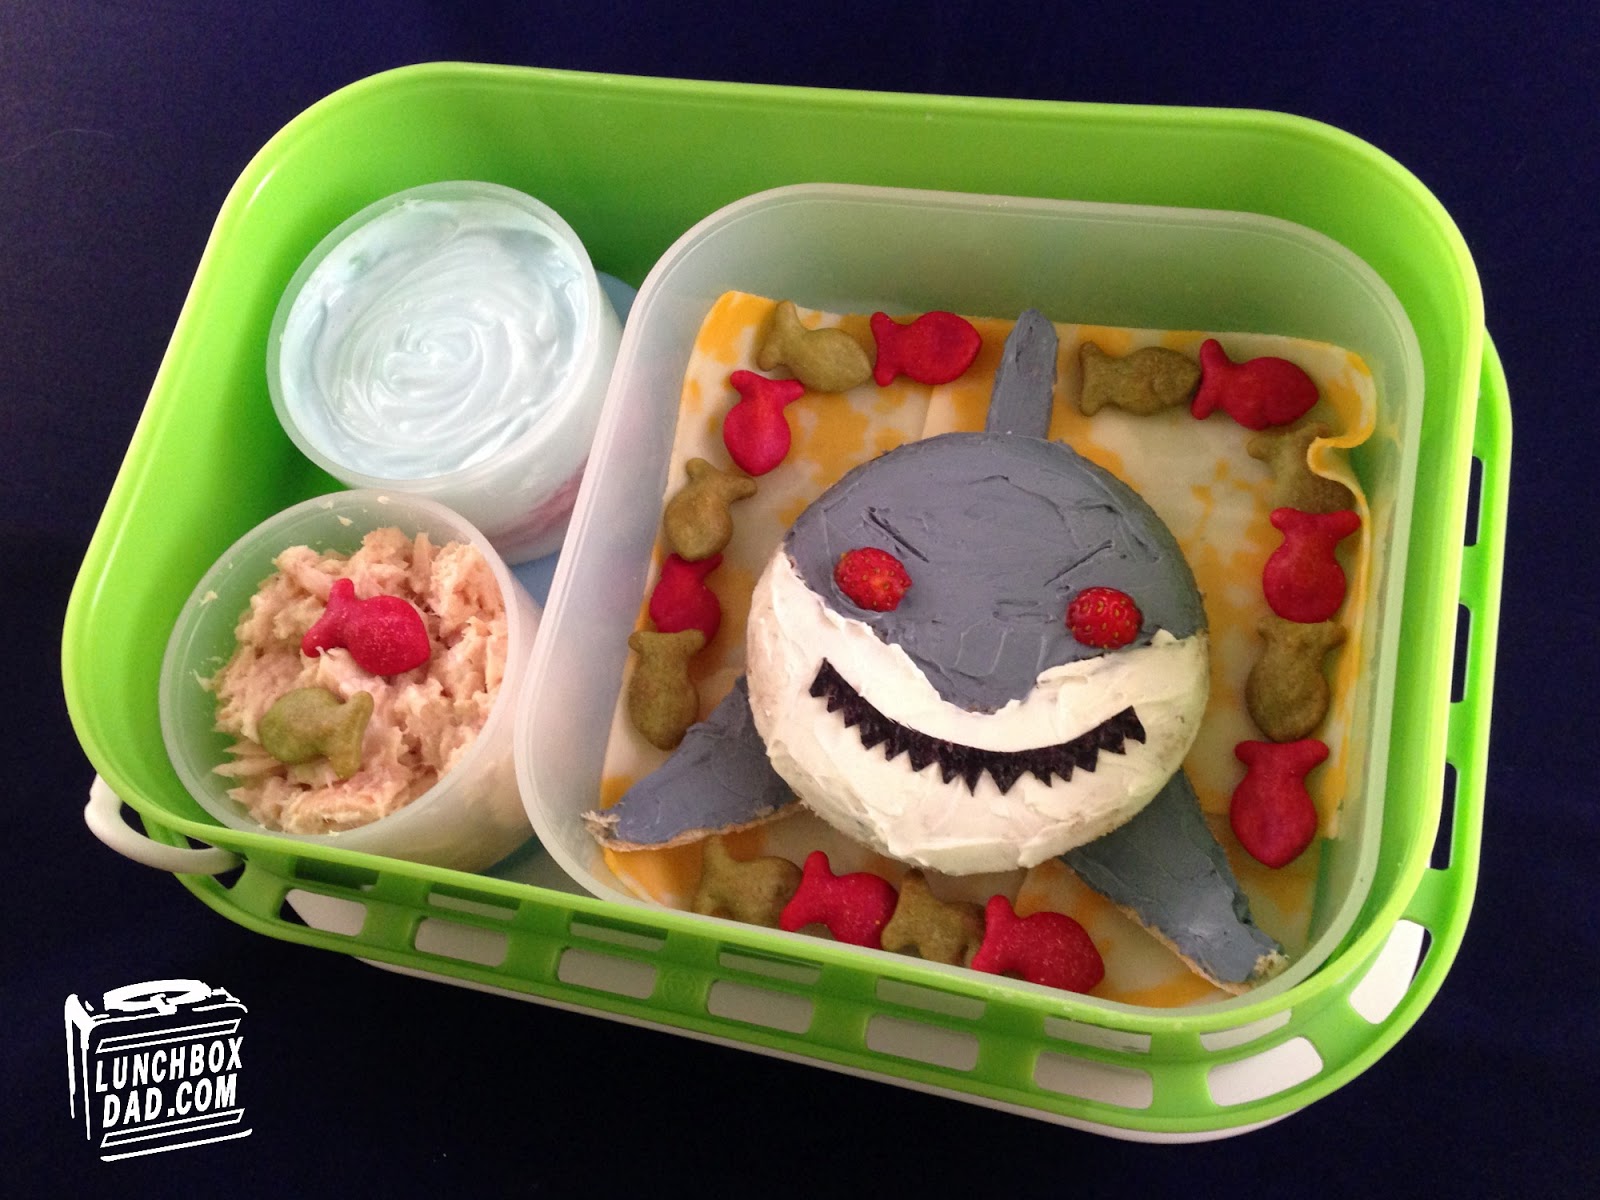 Yubo - Personalized Lunch Box Shark Tank Season 5